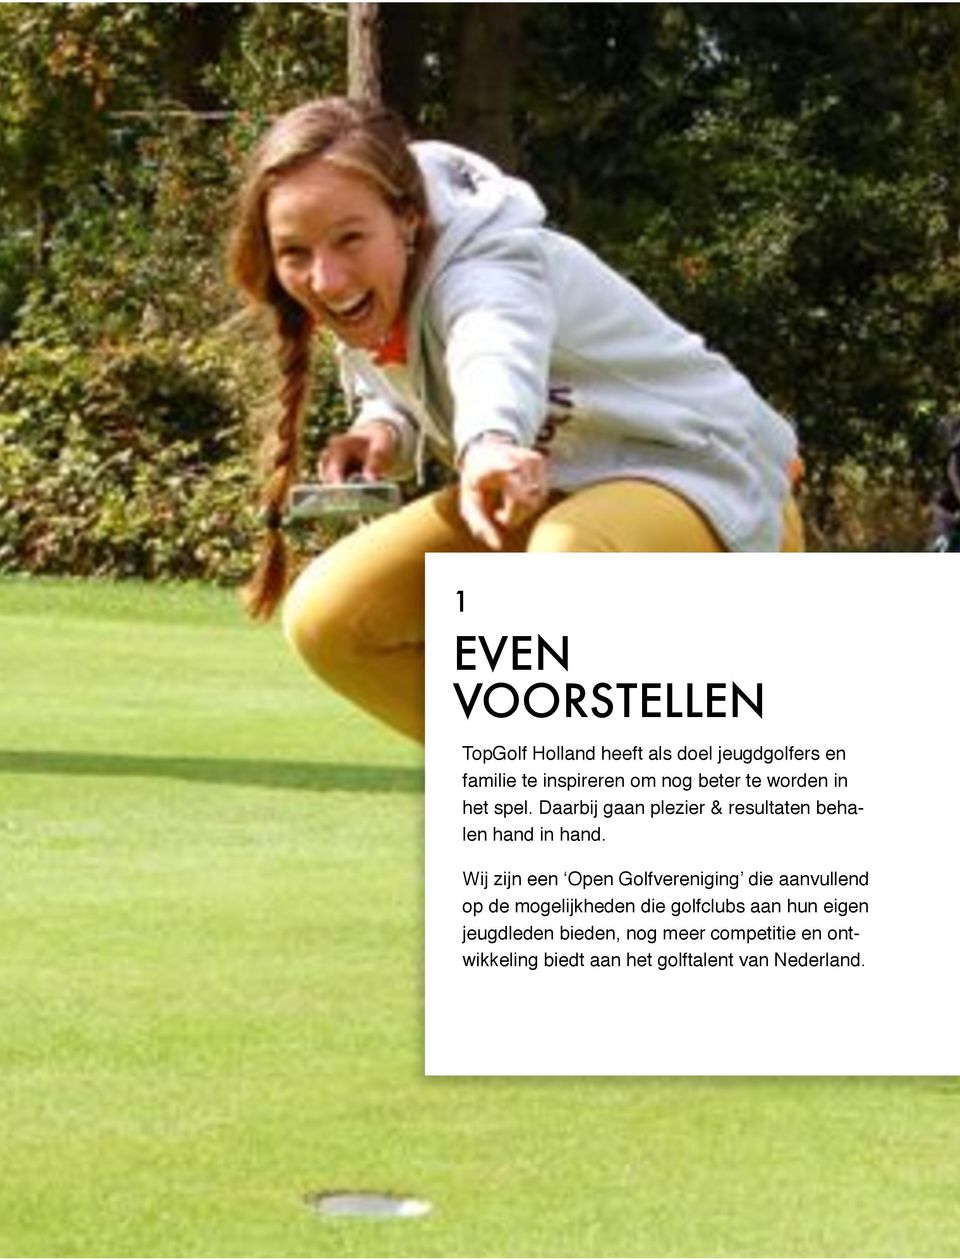 Wij zijn een Open Golfvereniging die aanvullend op de mogelijkheden die golfclubs aan hun